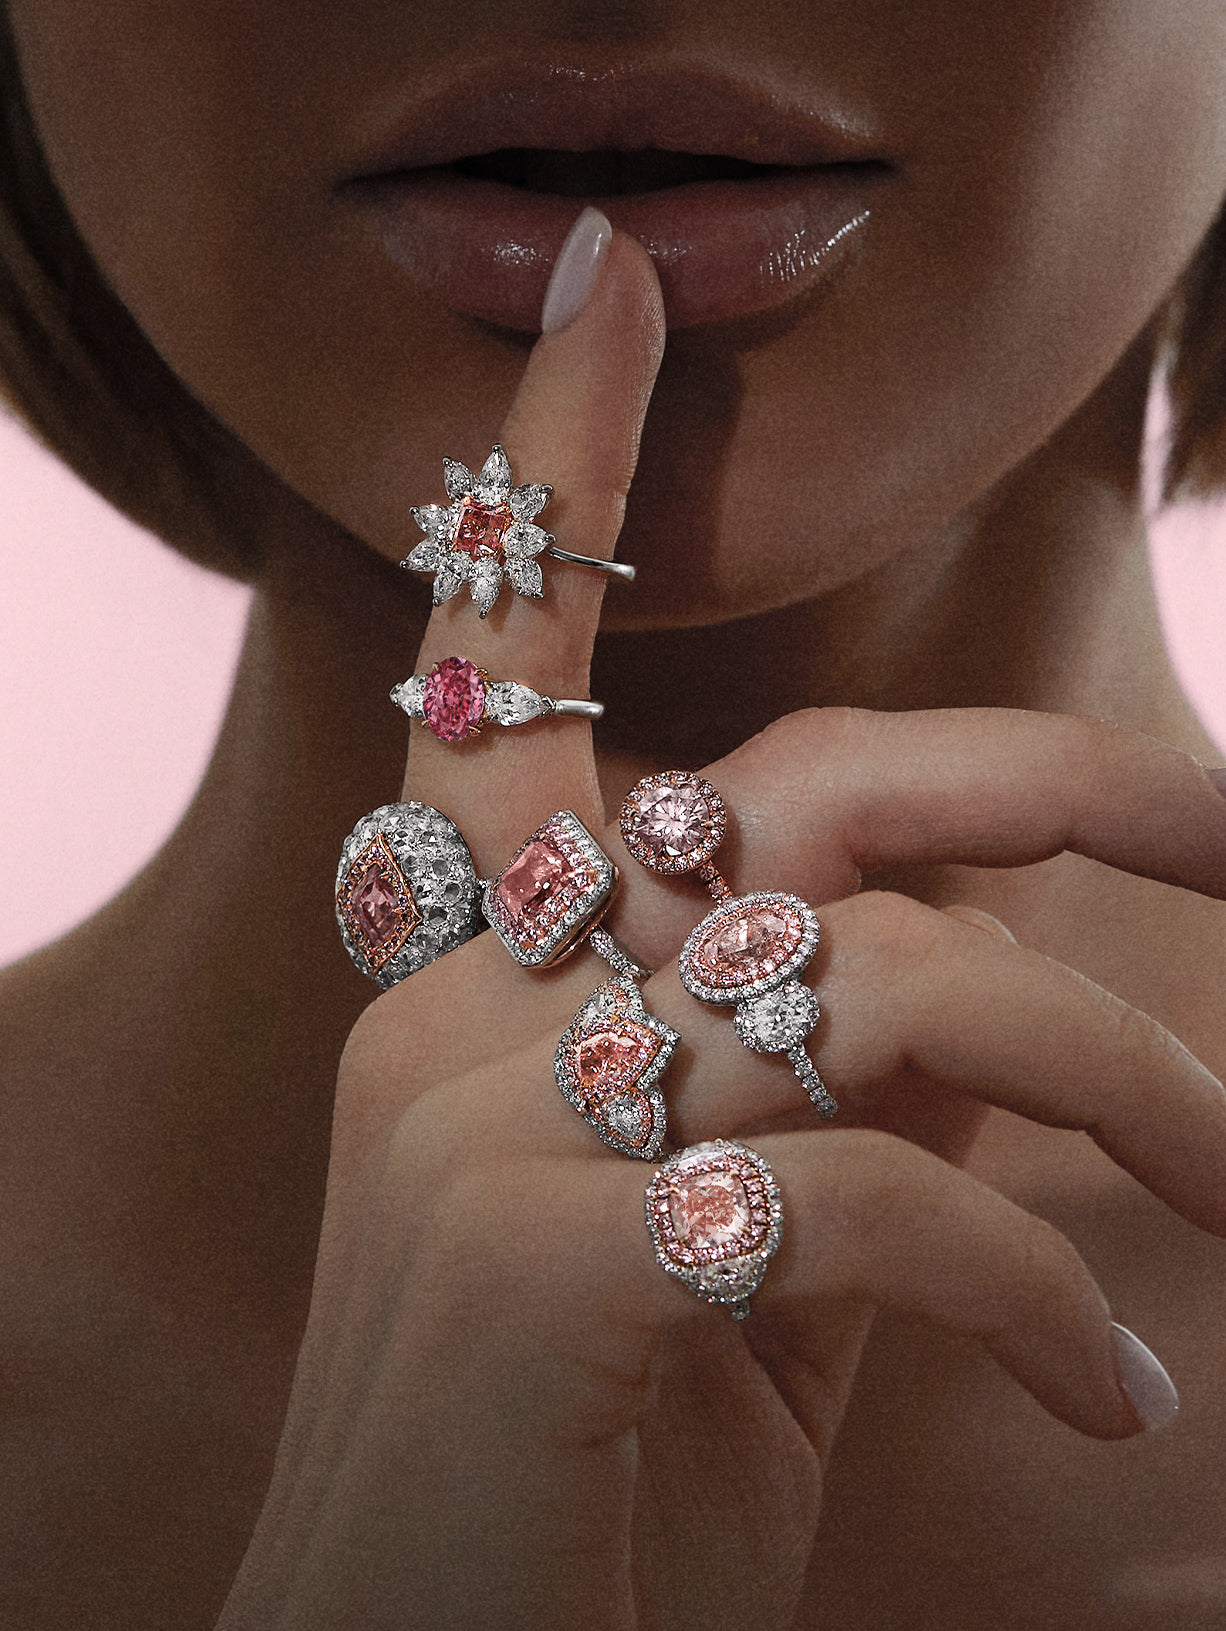 Argyle Pink™ Diamond Aurelia Ring - Pink Diamonds, J FINE - J Fine, Rings - Pink Diamond Jewelry, argyle-pink™-diamond-aurelia-ring-by-j-fine - Argyle Pink Diamonds